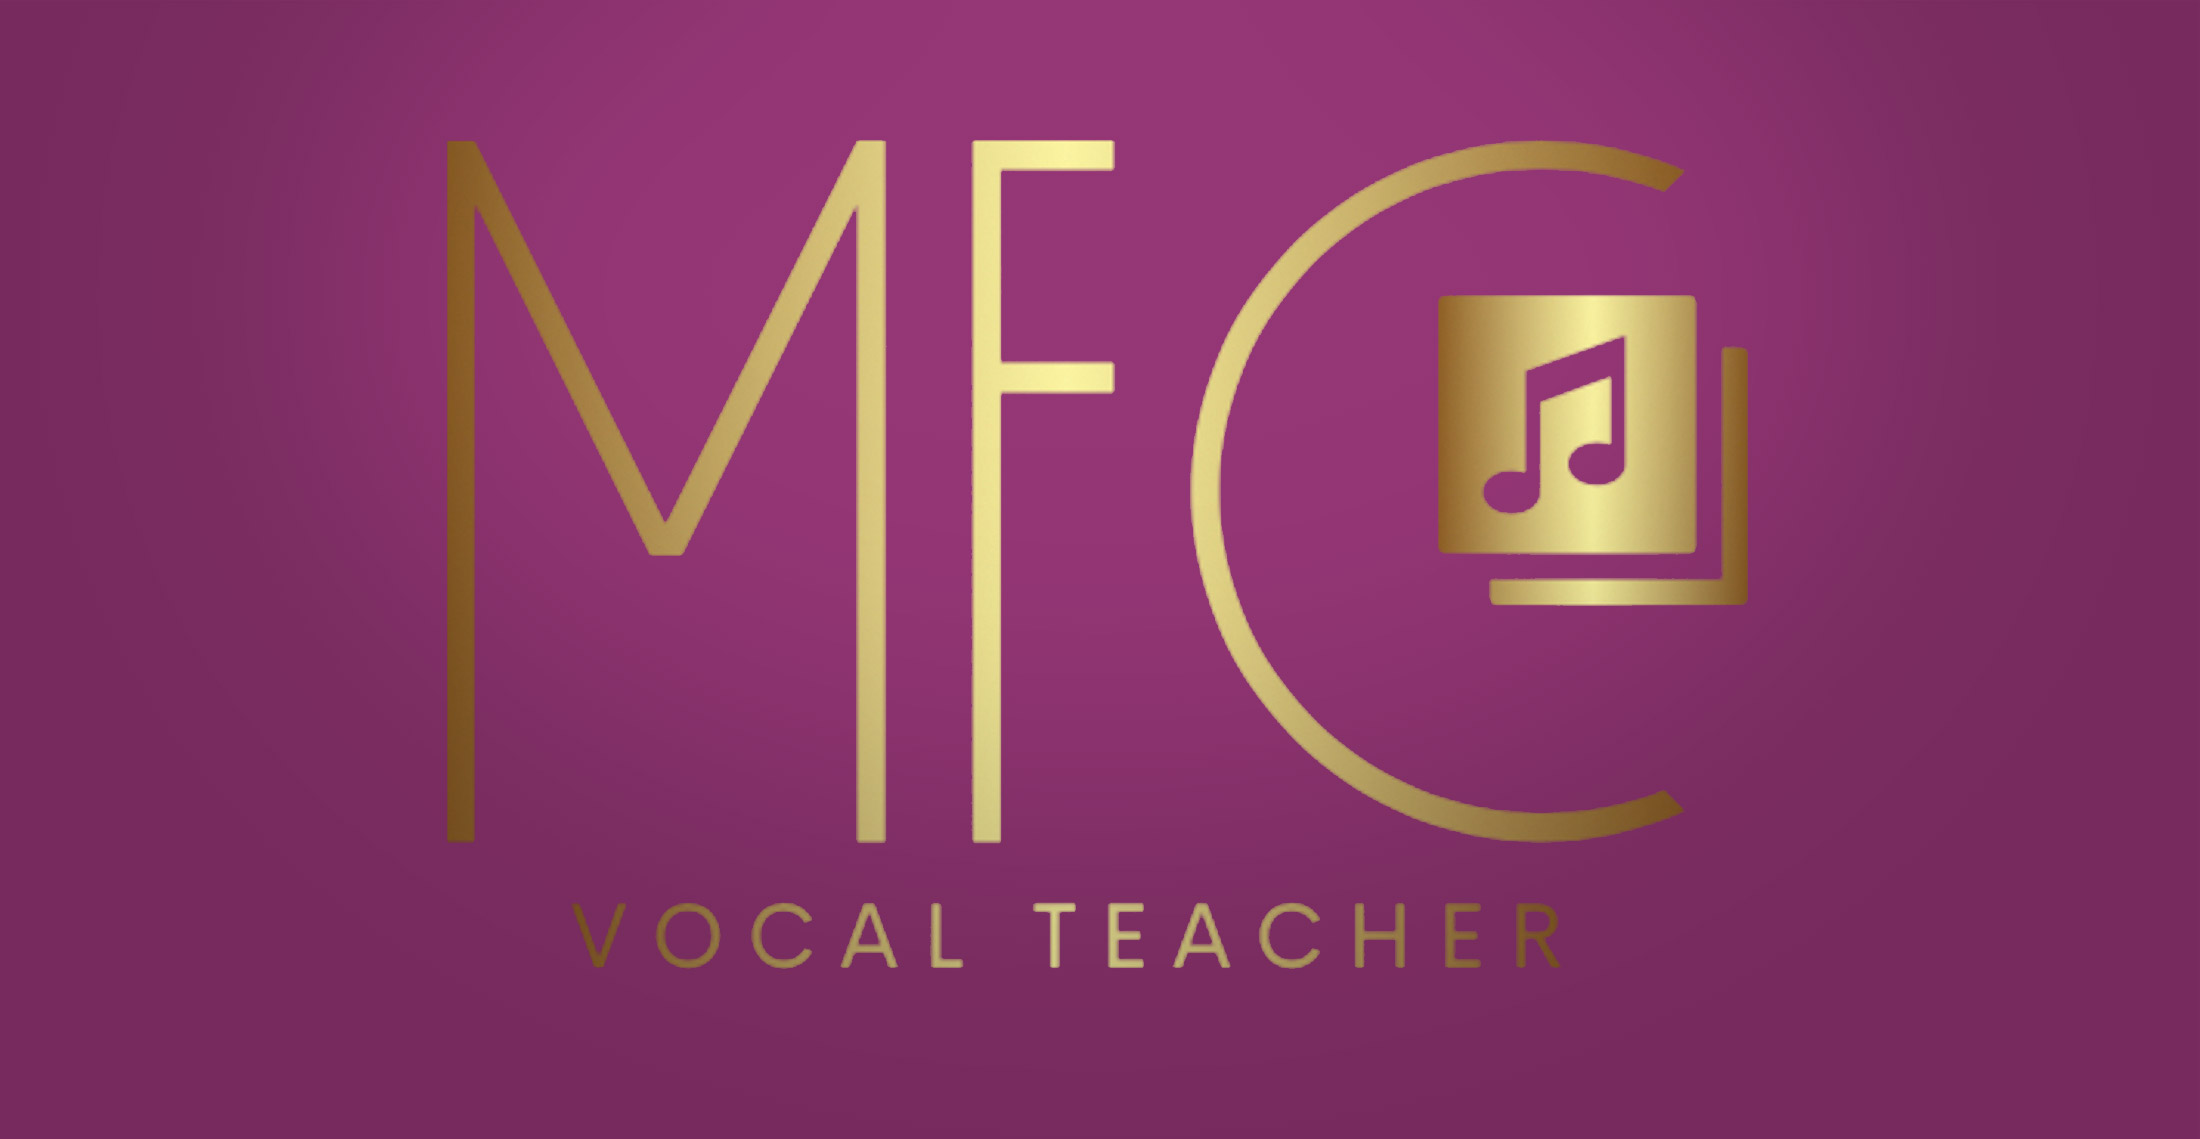 Michelle Francis Cook - Vocal Tacher